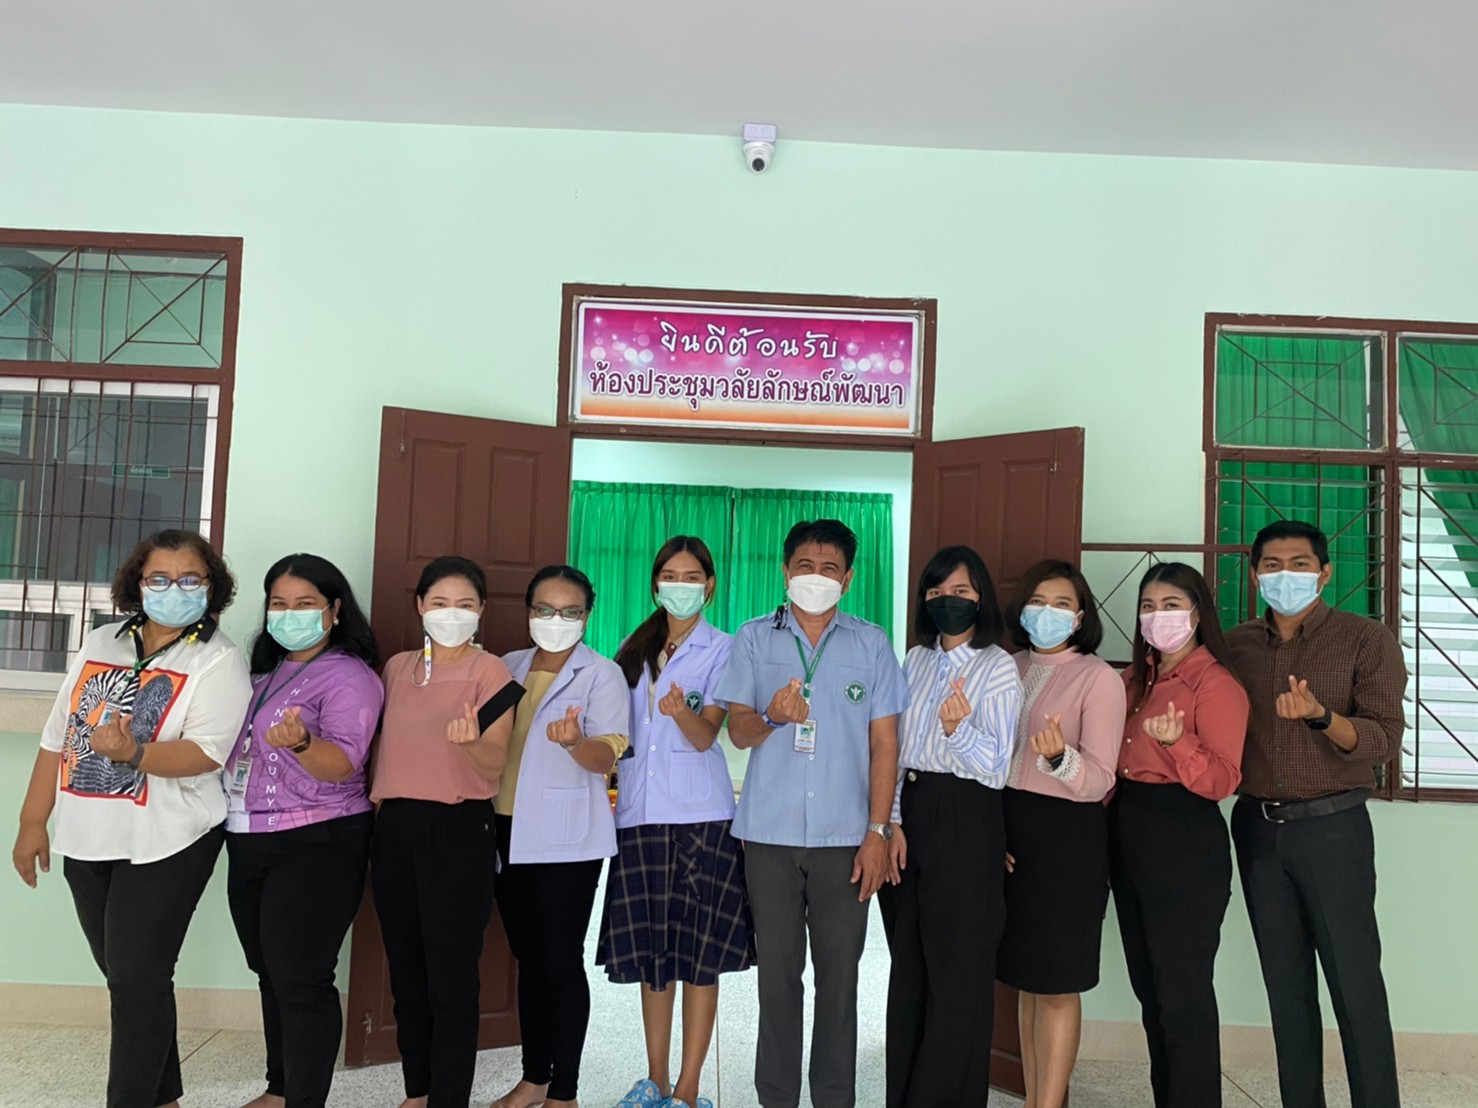 ม.วลัยลักษณ์ ยกระดับการดูแลสุขภาพชุมชนสาธิตวลัยลักษณ์พัฒนา ด้วยศาสตร์แผนแพทย์ไทย